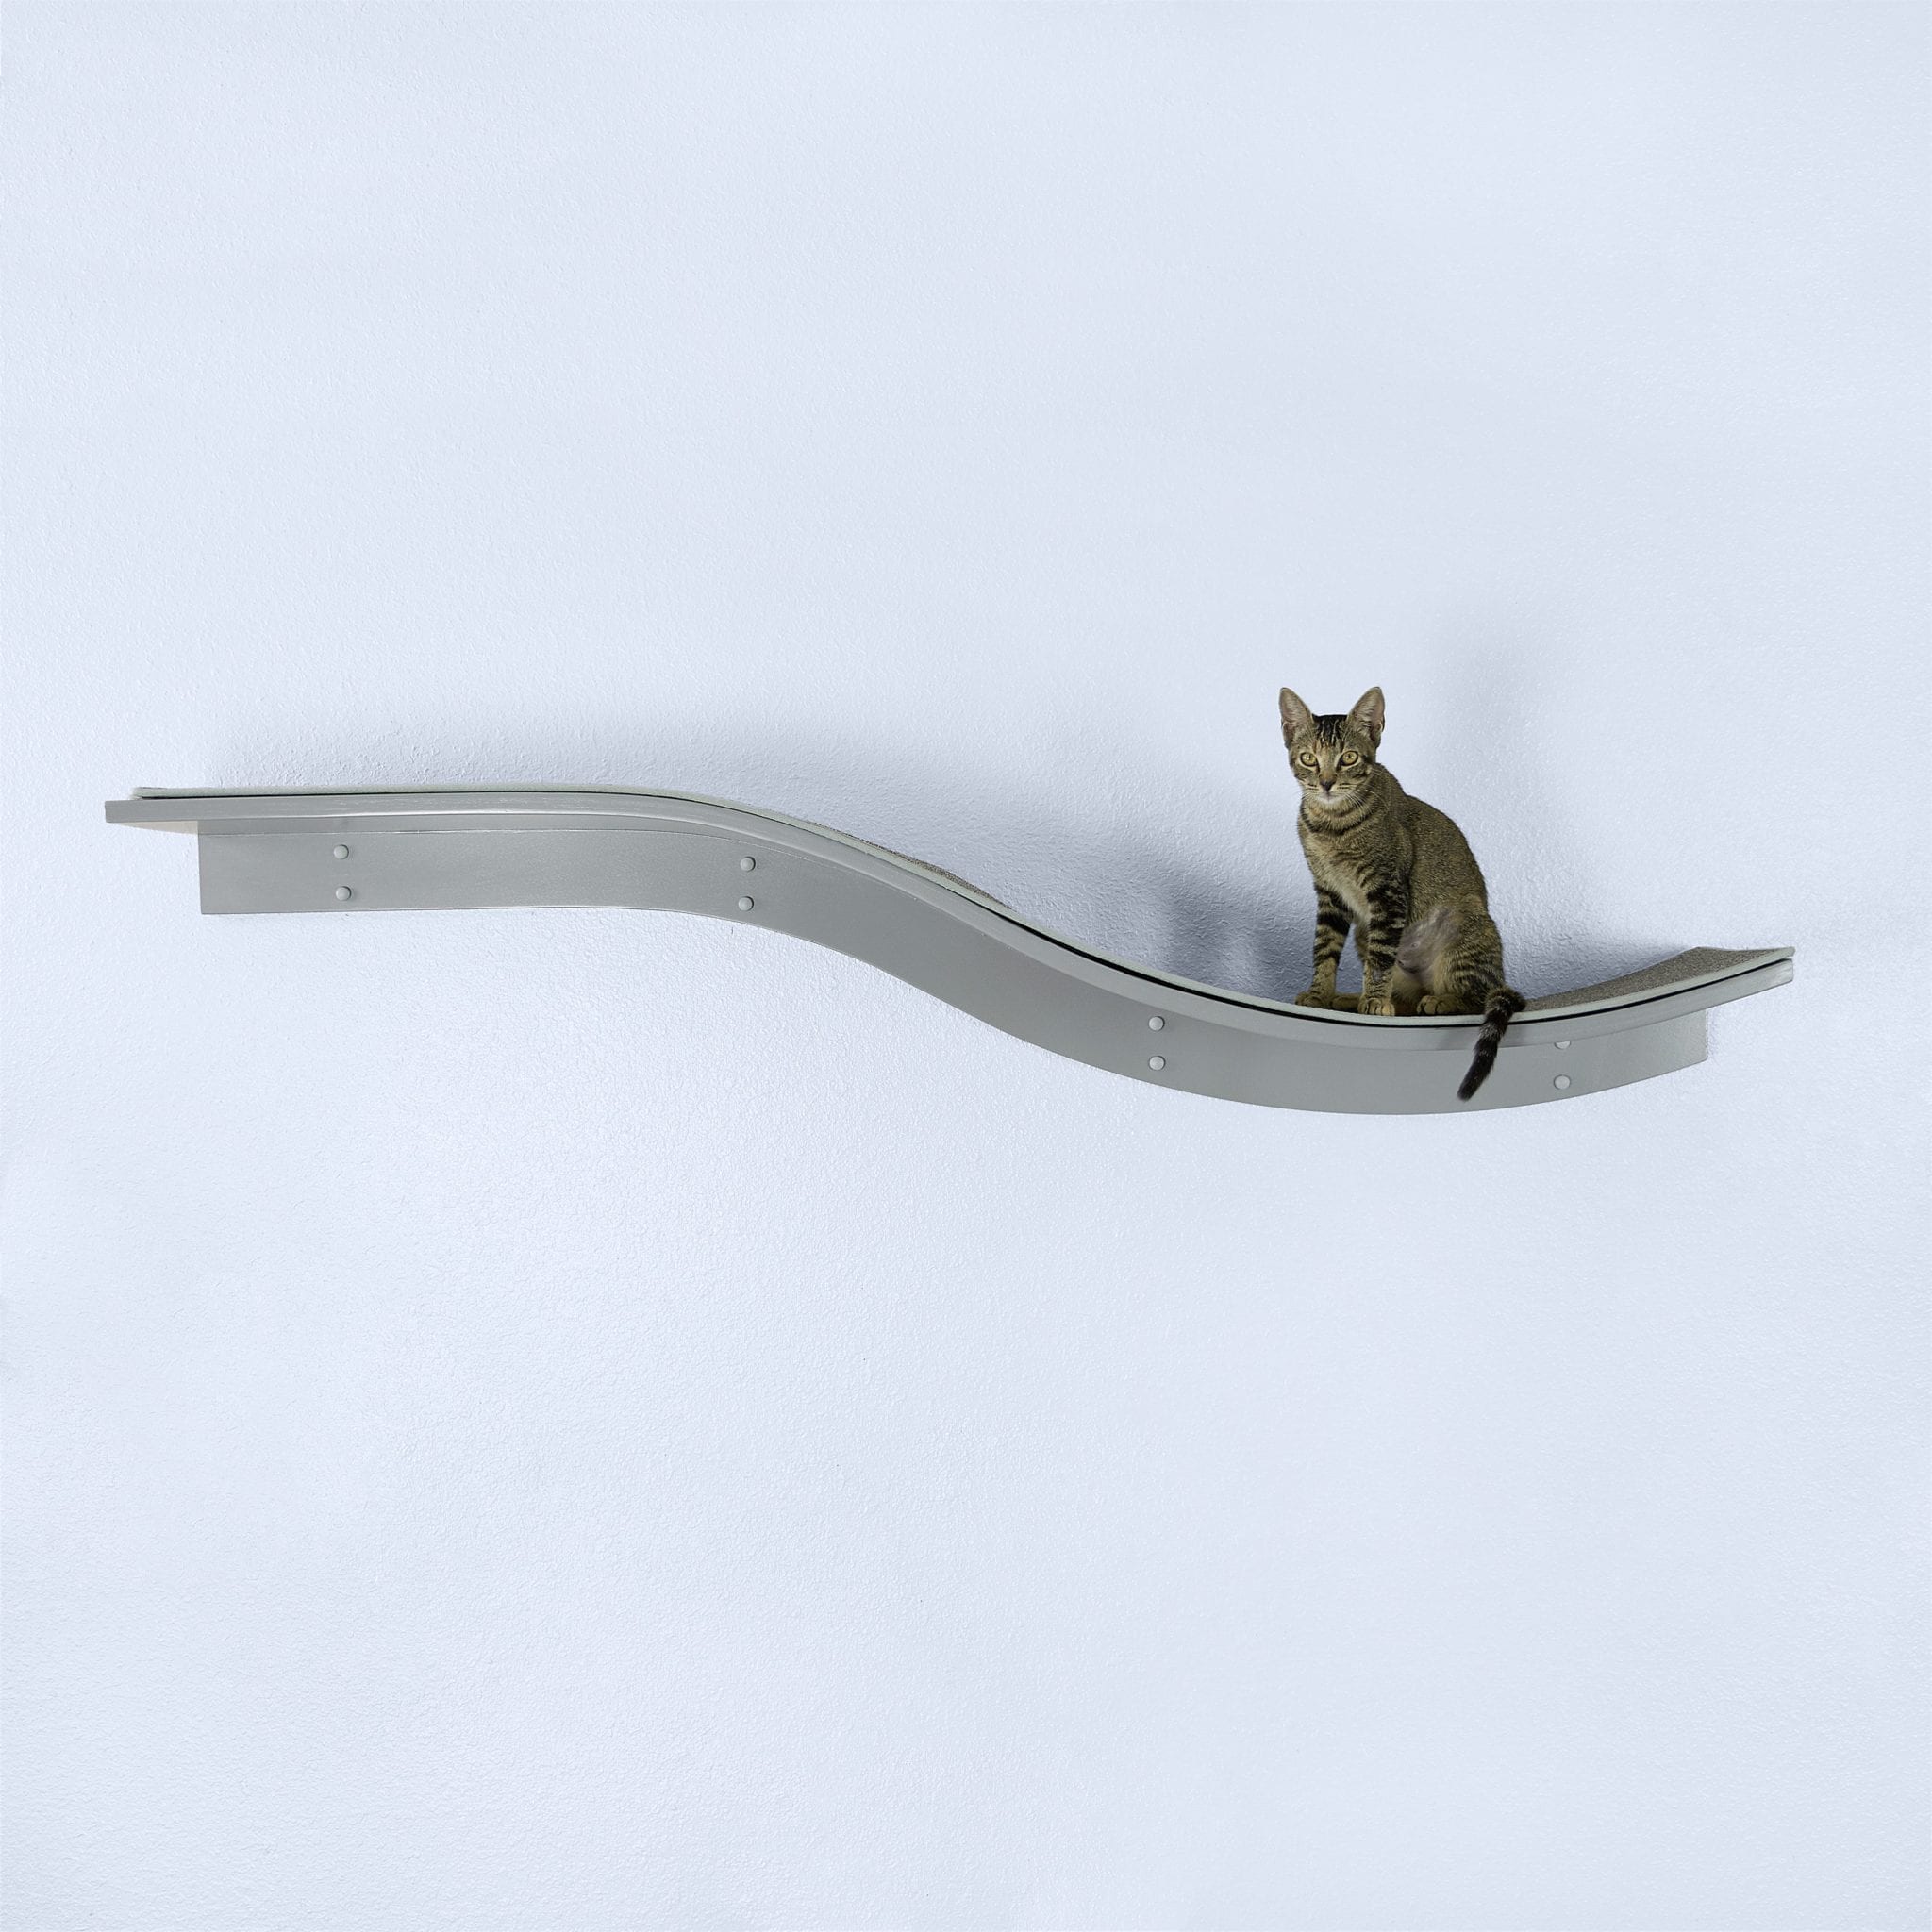 Lotus Branch Cat Shelf by The Refined Feline